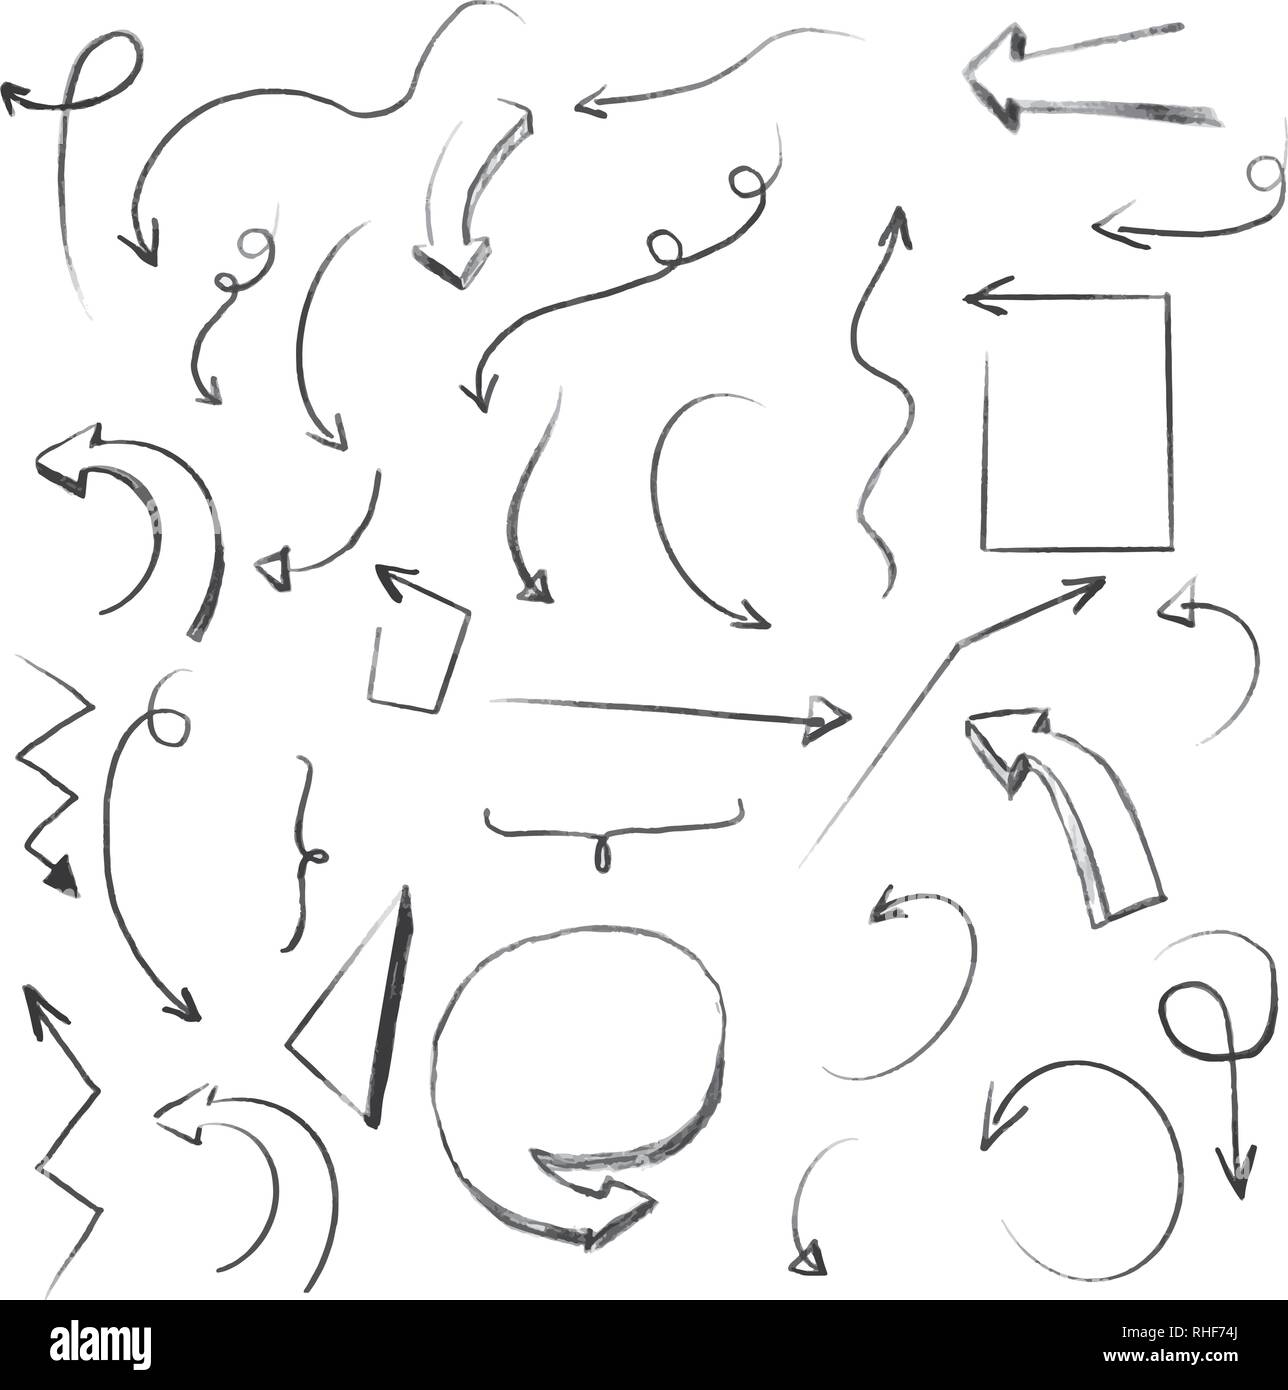 Lineare Formen auf Weiß. Hand gezeichnet scribble Skizzen. Array von Zeilen. Schwarze und weiße Abbildung. Doodles für Design und Business Stock Vektor